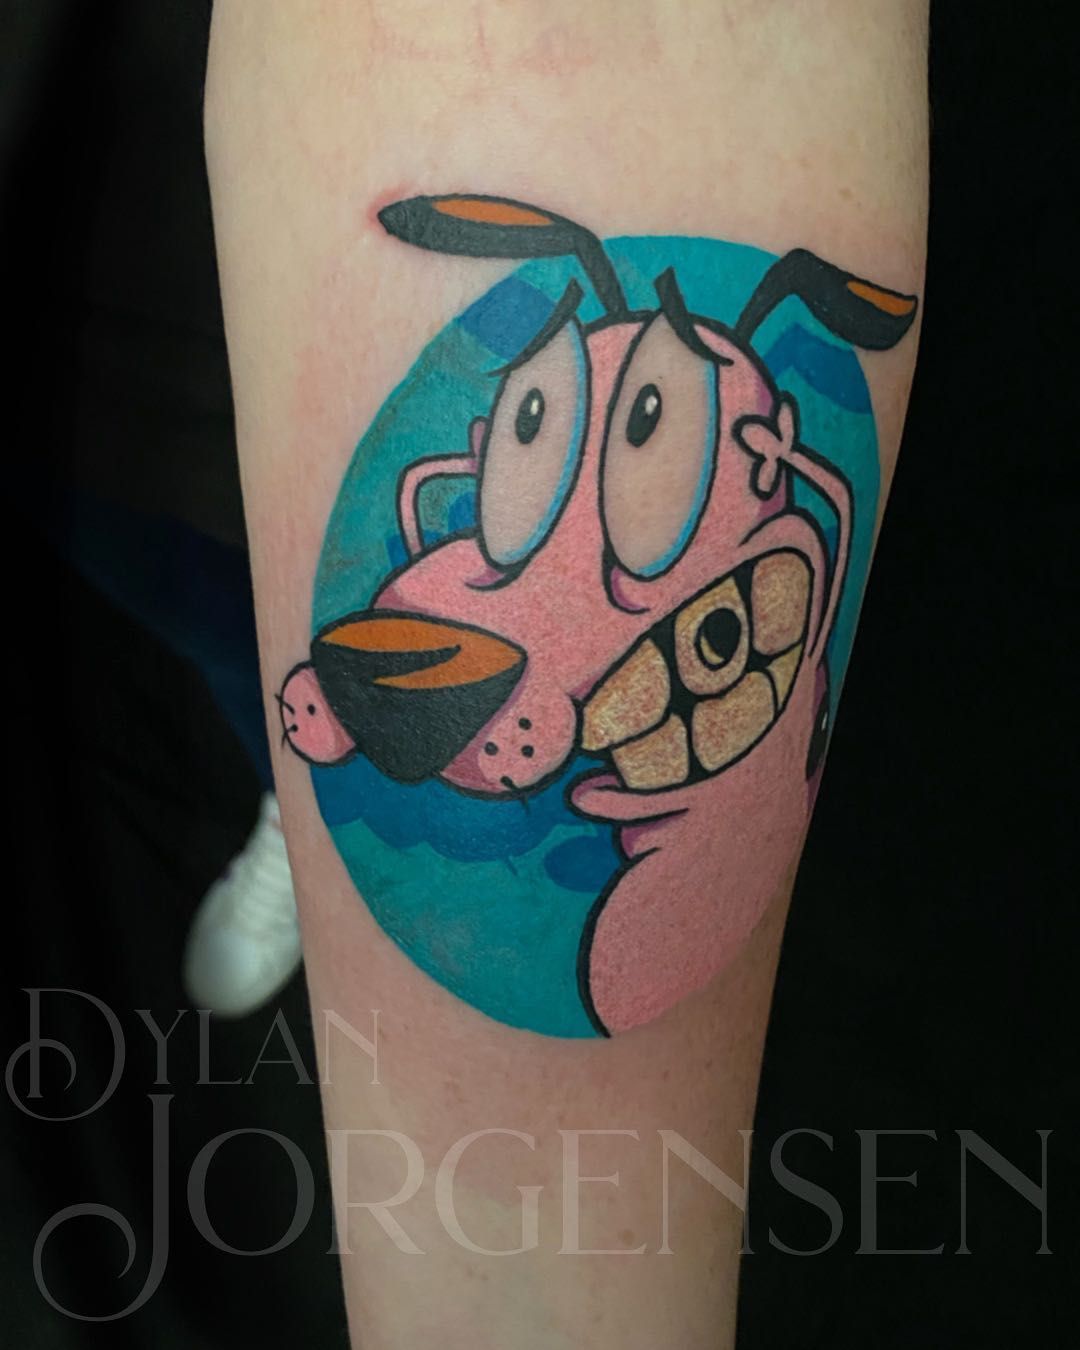 Dylan Jorgensen Tattoos